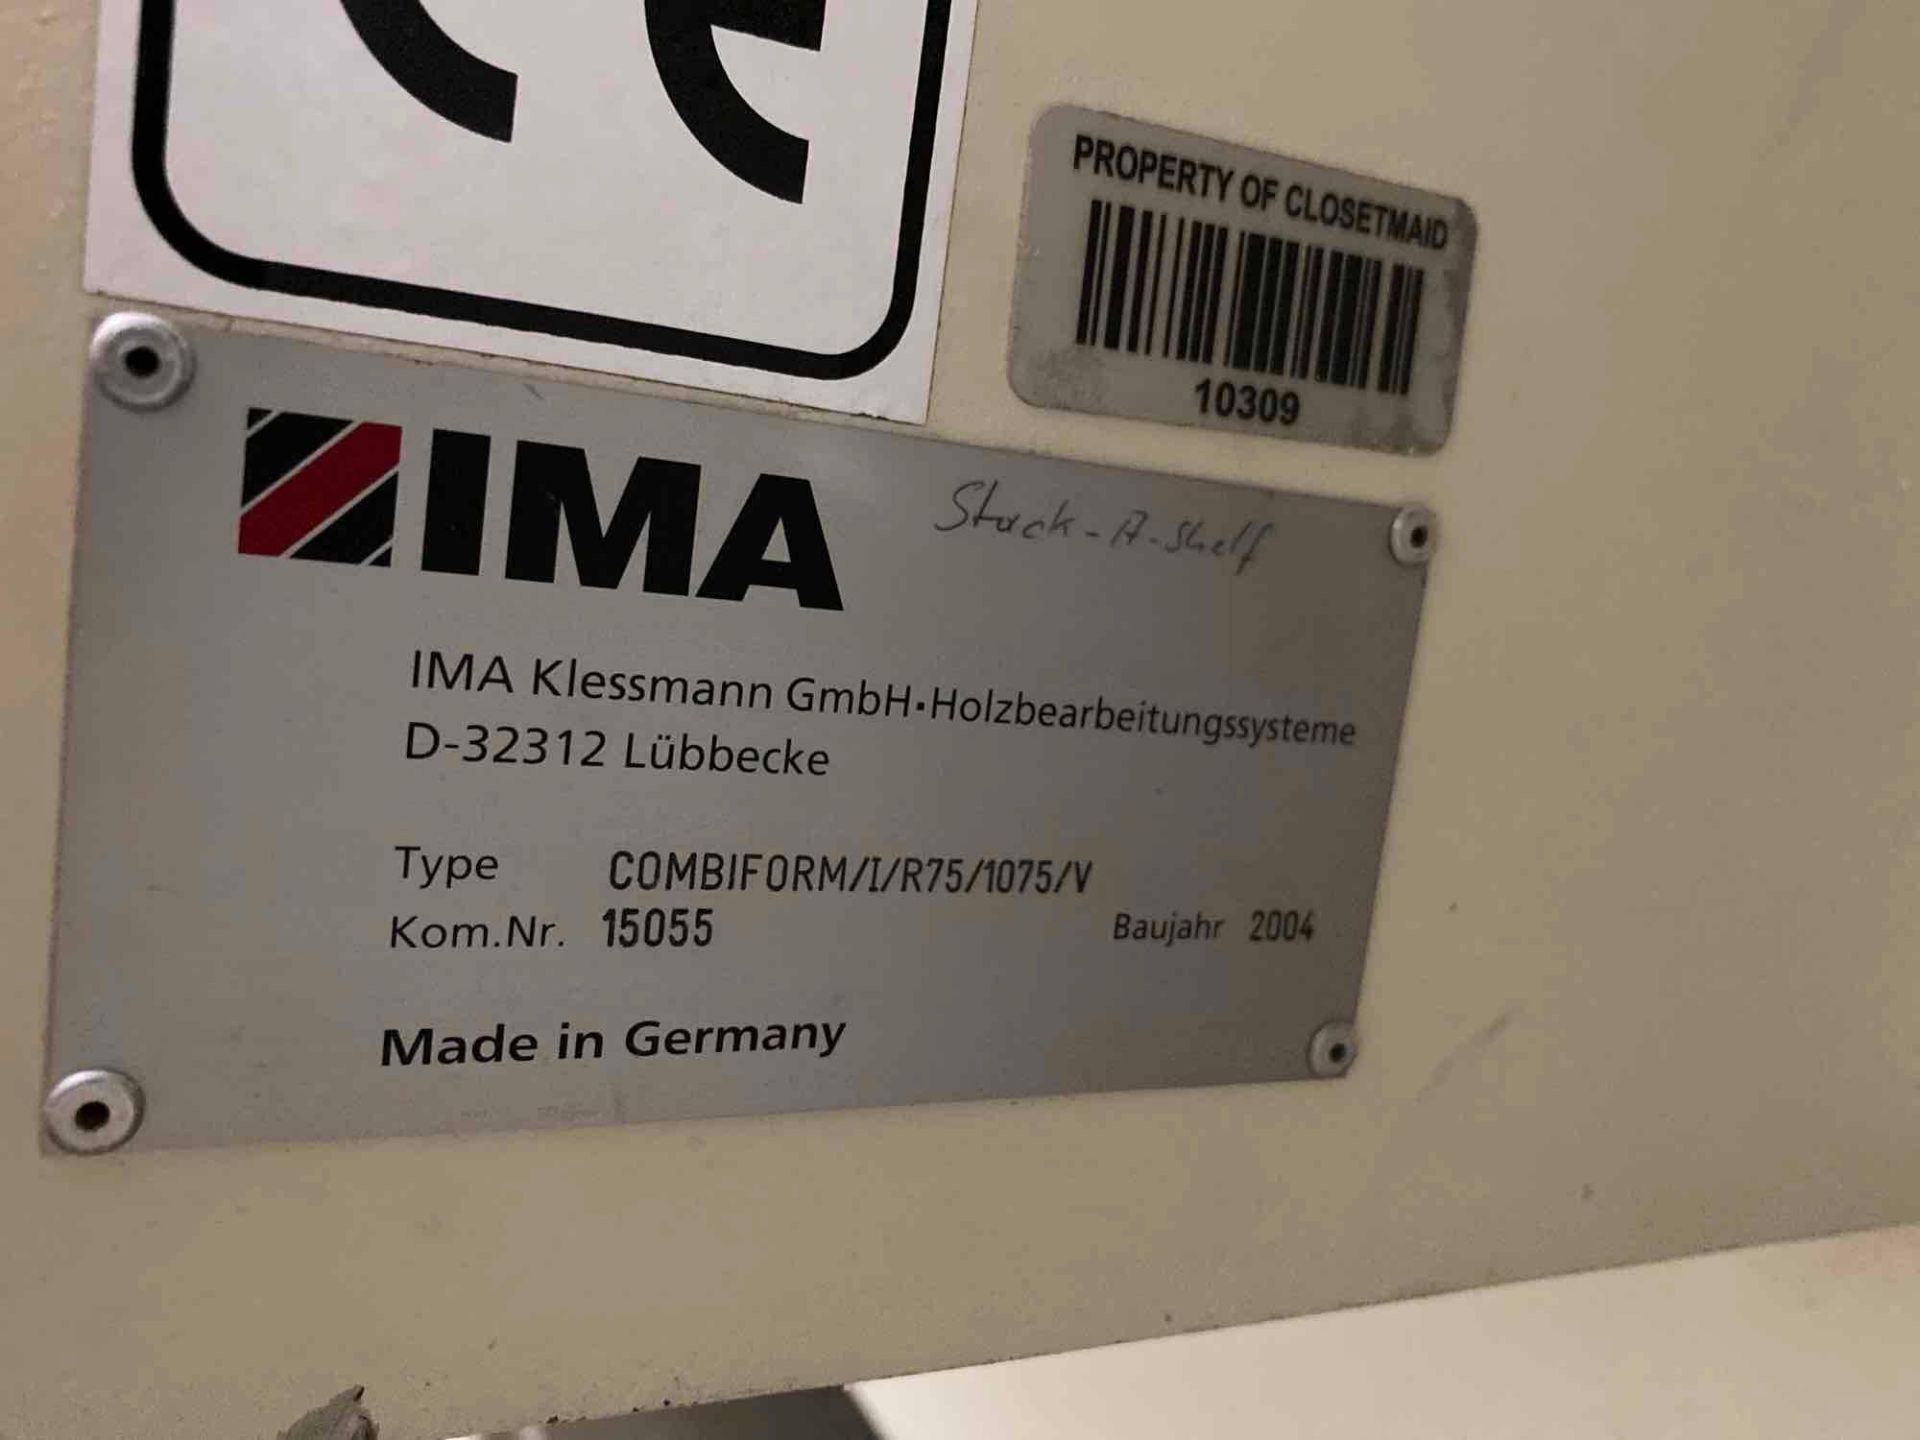 IMA Combiform/I/R75/1075/V CNC Contour Edgebander Machine - Image 4 of 18